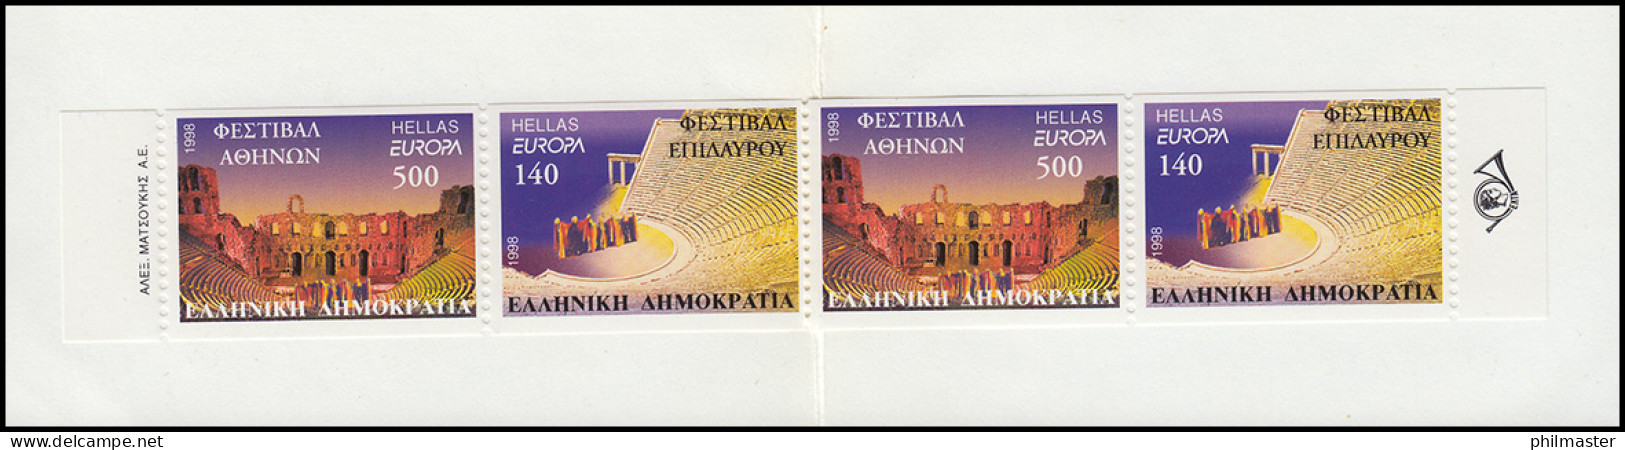 Griechenland Markenheftchen 21 Europa 1998, Postfrisch ** / MNH - Booklets